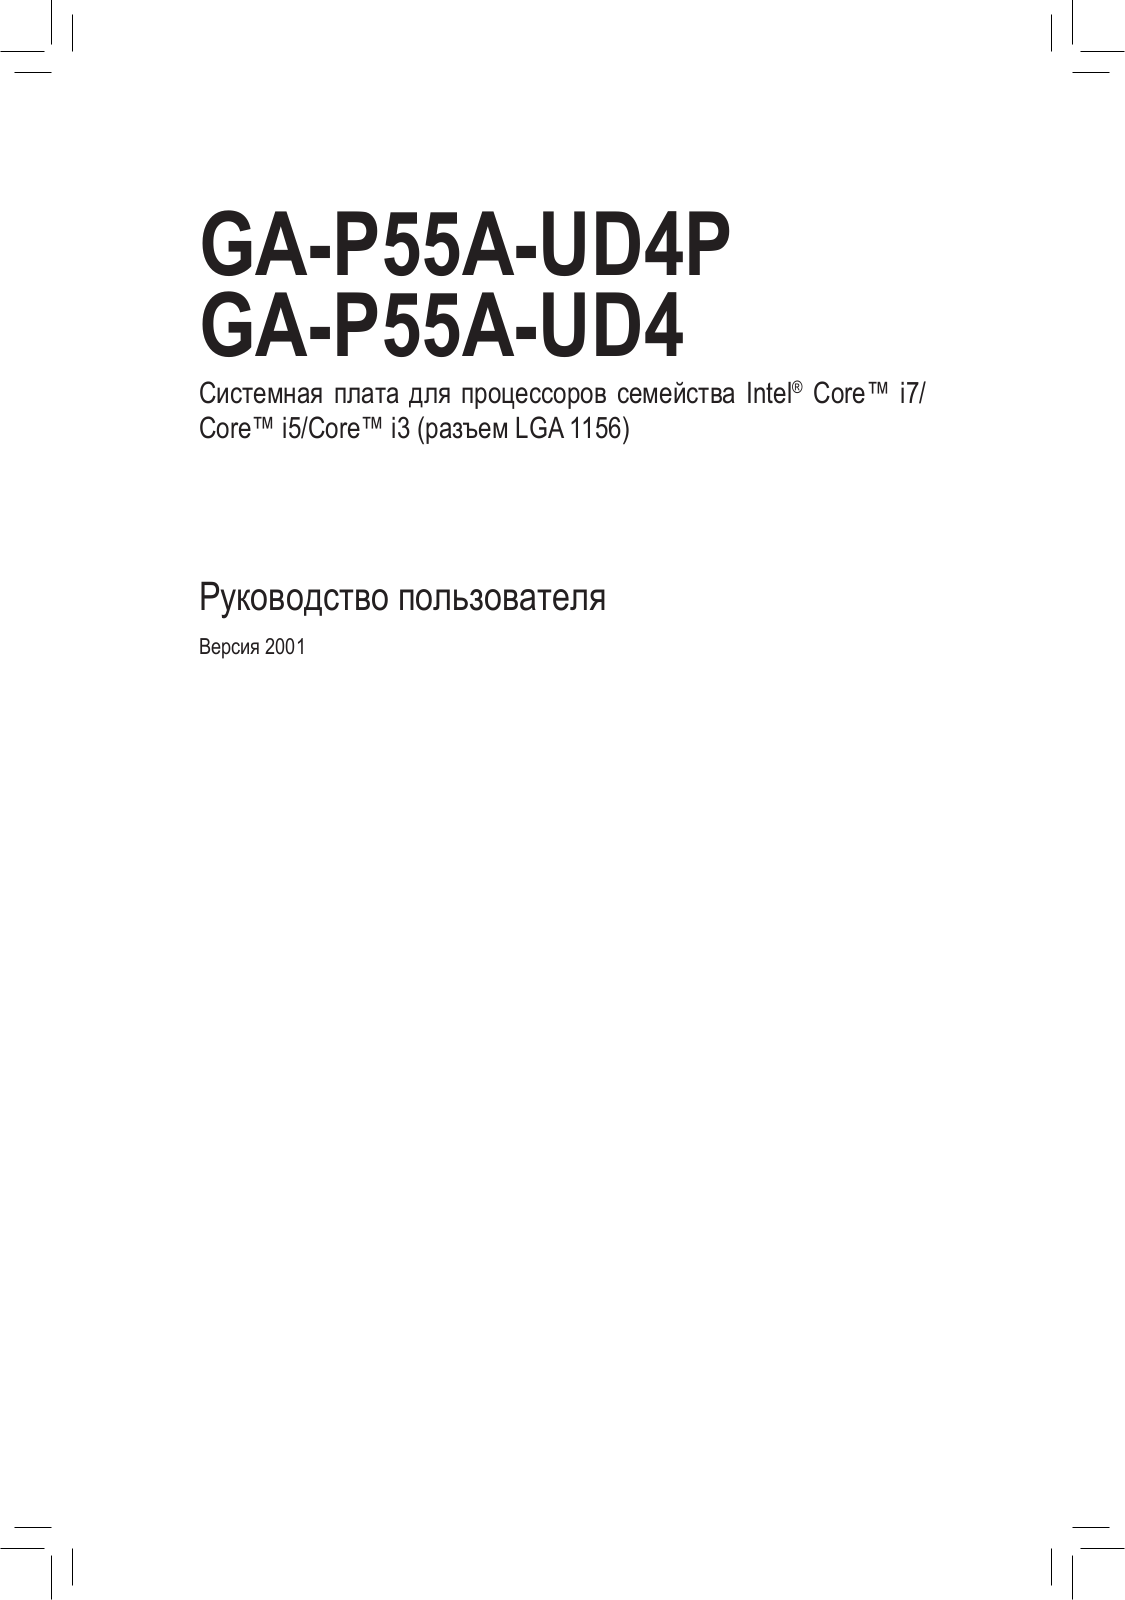 Gigabyte GA-P55A-UD4P (rev. 1.0), GA-P55A-UD4 (rev. 1.0) User Manual